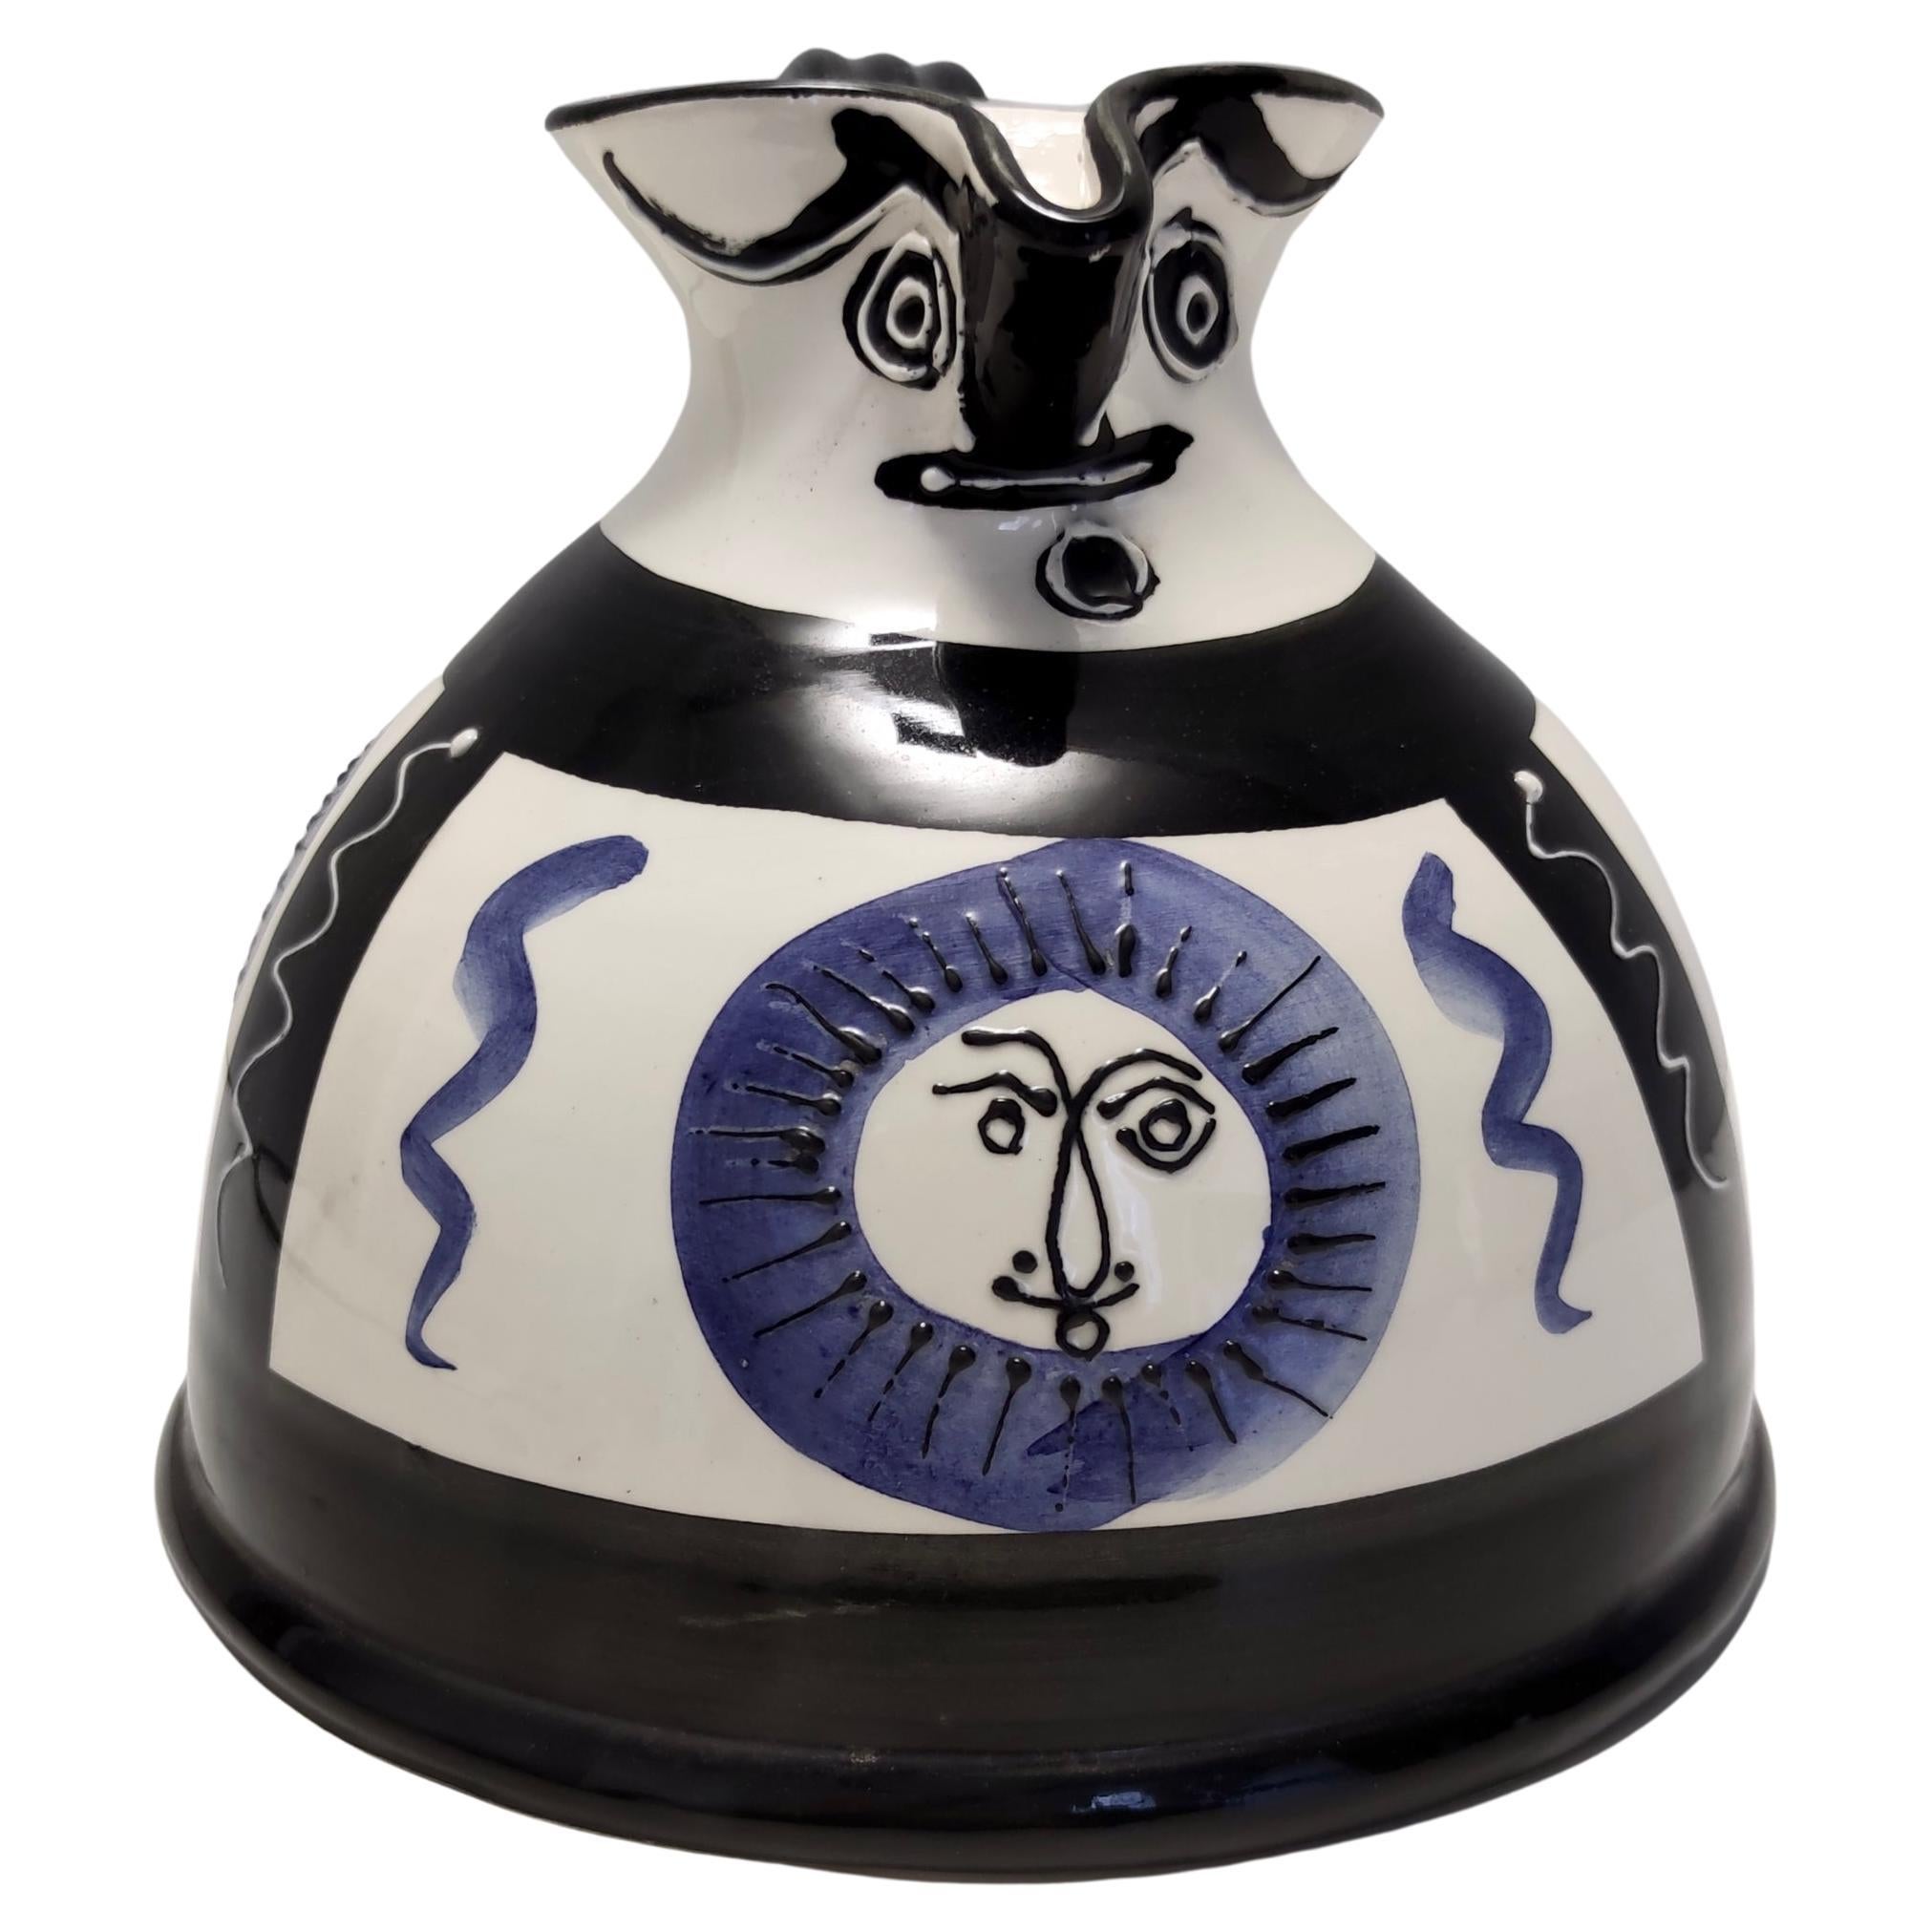 Vase / pichet en céramique peint à la main en blanc, noir et bleu dans le style The